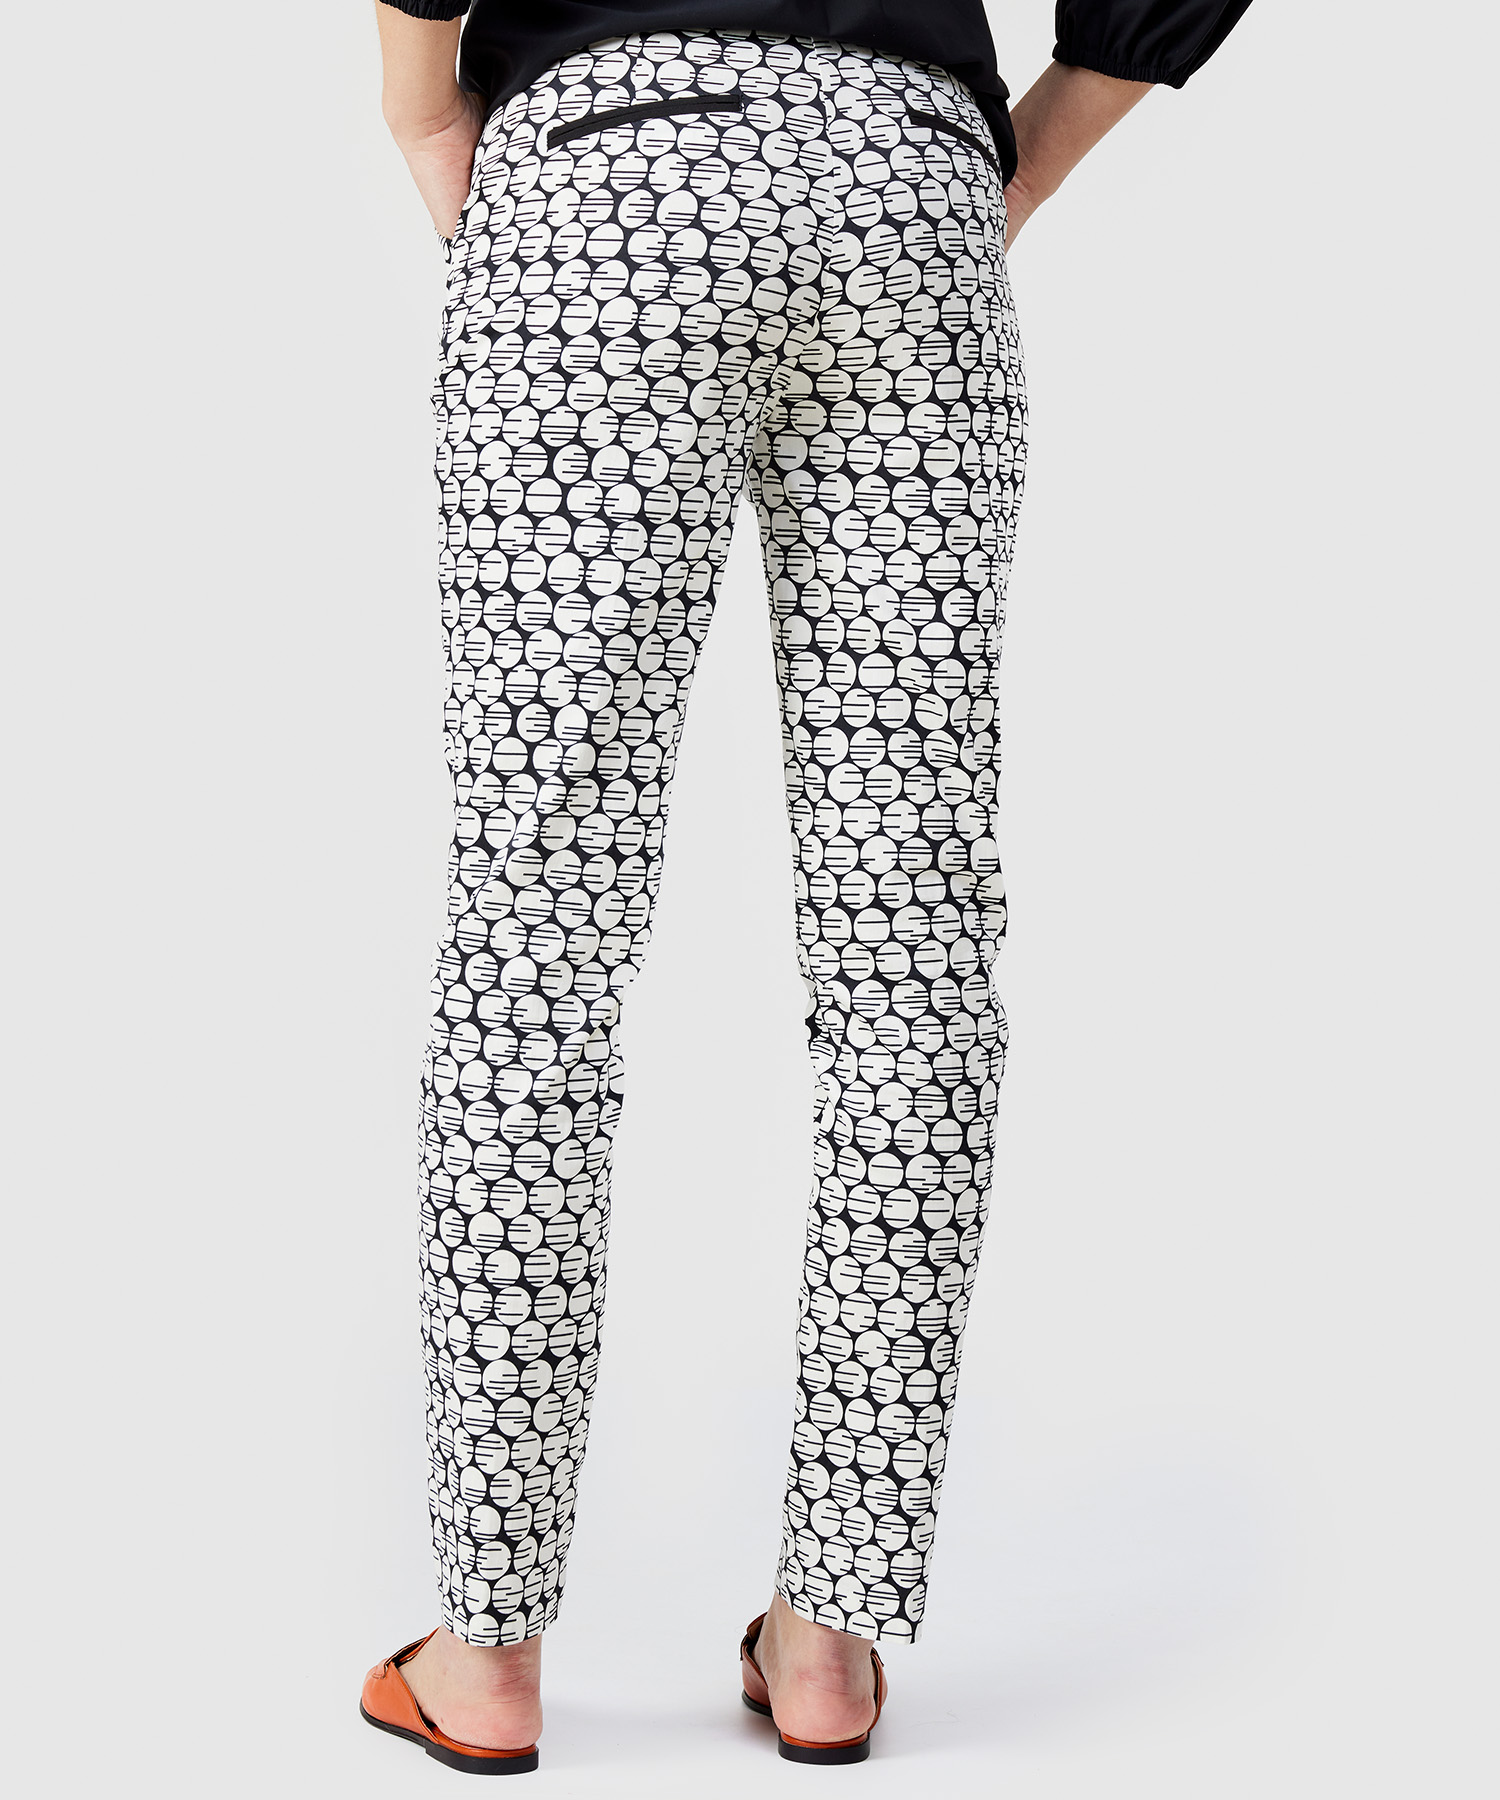 Mode Korte broeken Hot pants H&M Hot pants zwart-wit volledige print casual uitstraling 